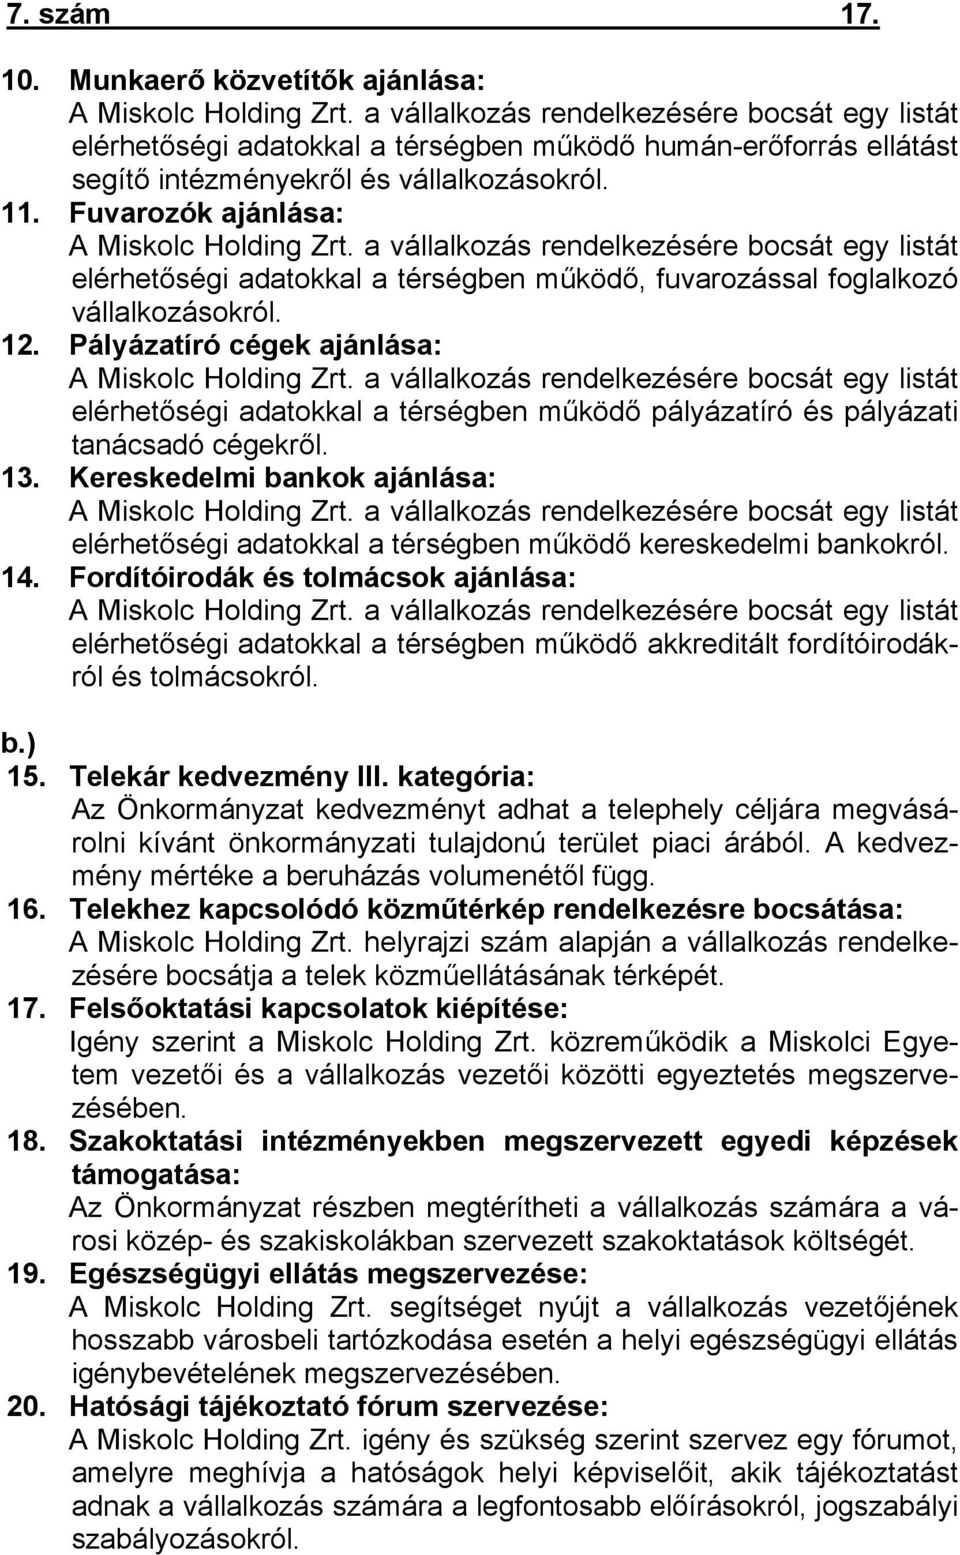 Fuvarozók ajánlása: A Miskolc Holding Zrt. a vállalkozás rendelkezésére bocsát egy listát elérhetőségi adatokkal a térségben működő, fuvarozással foglalkozó vállalkozásokról. 12.